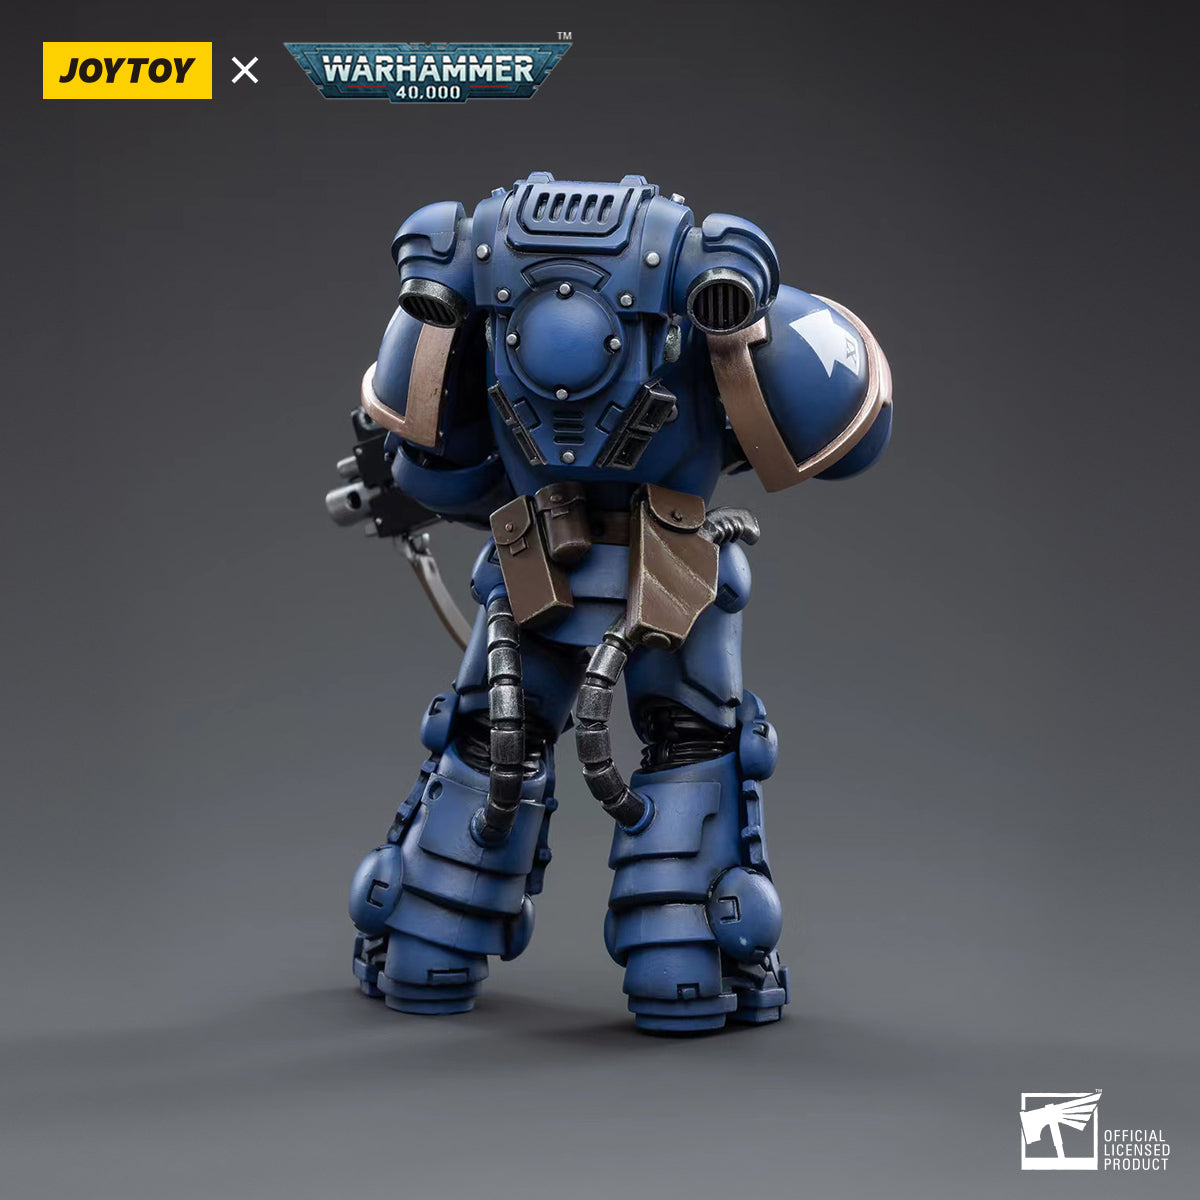 Warhammer Collectibles: 1/18 Scale Ultramarines Heavy Intercessor Sergeant Aetus Gardane